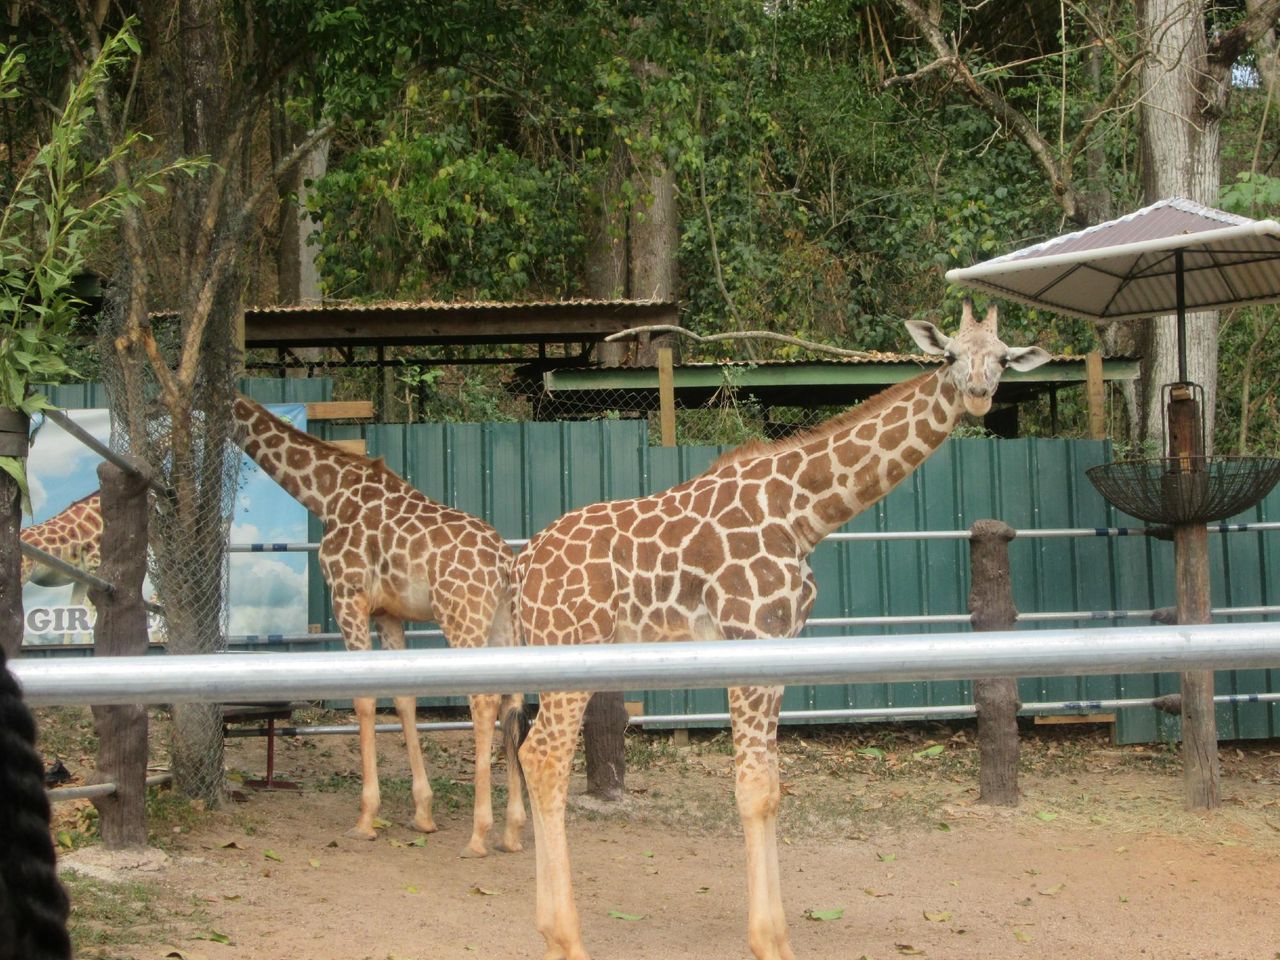 Découvrez le charme sauvage du Zoo des Caraïbes – Lattraction phare de Barranquilla !